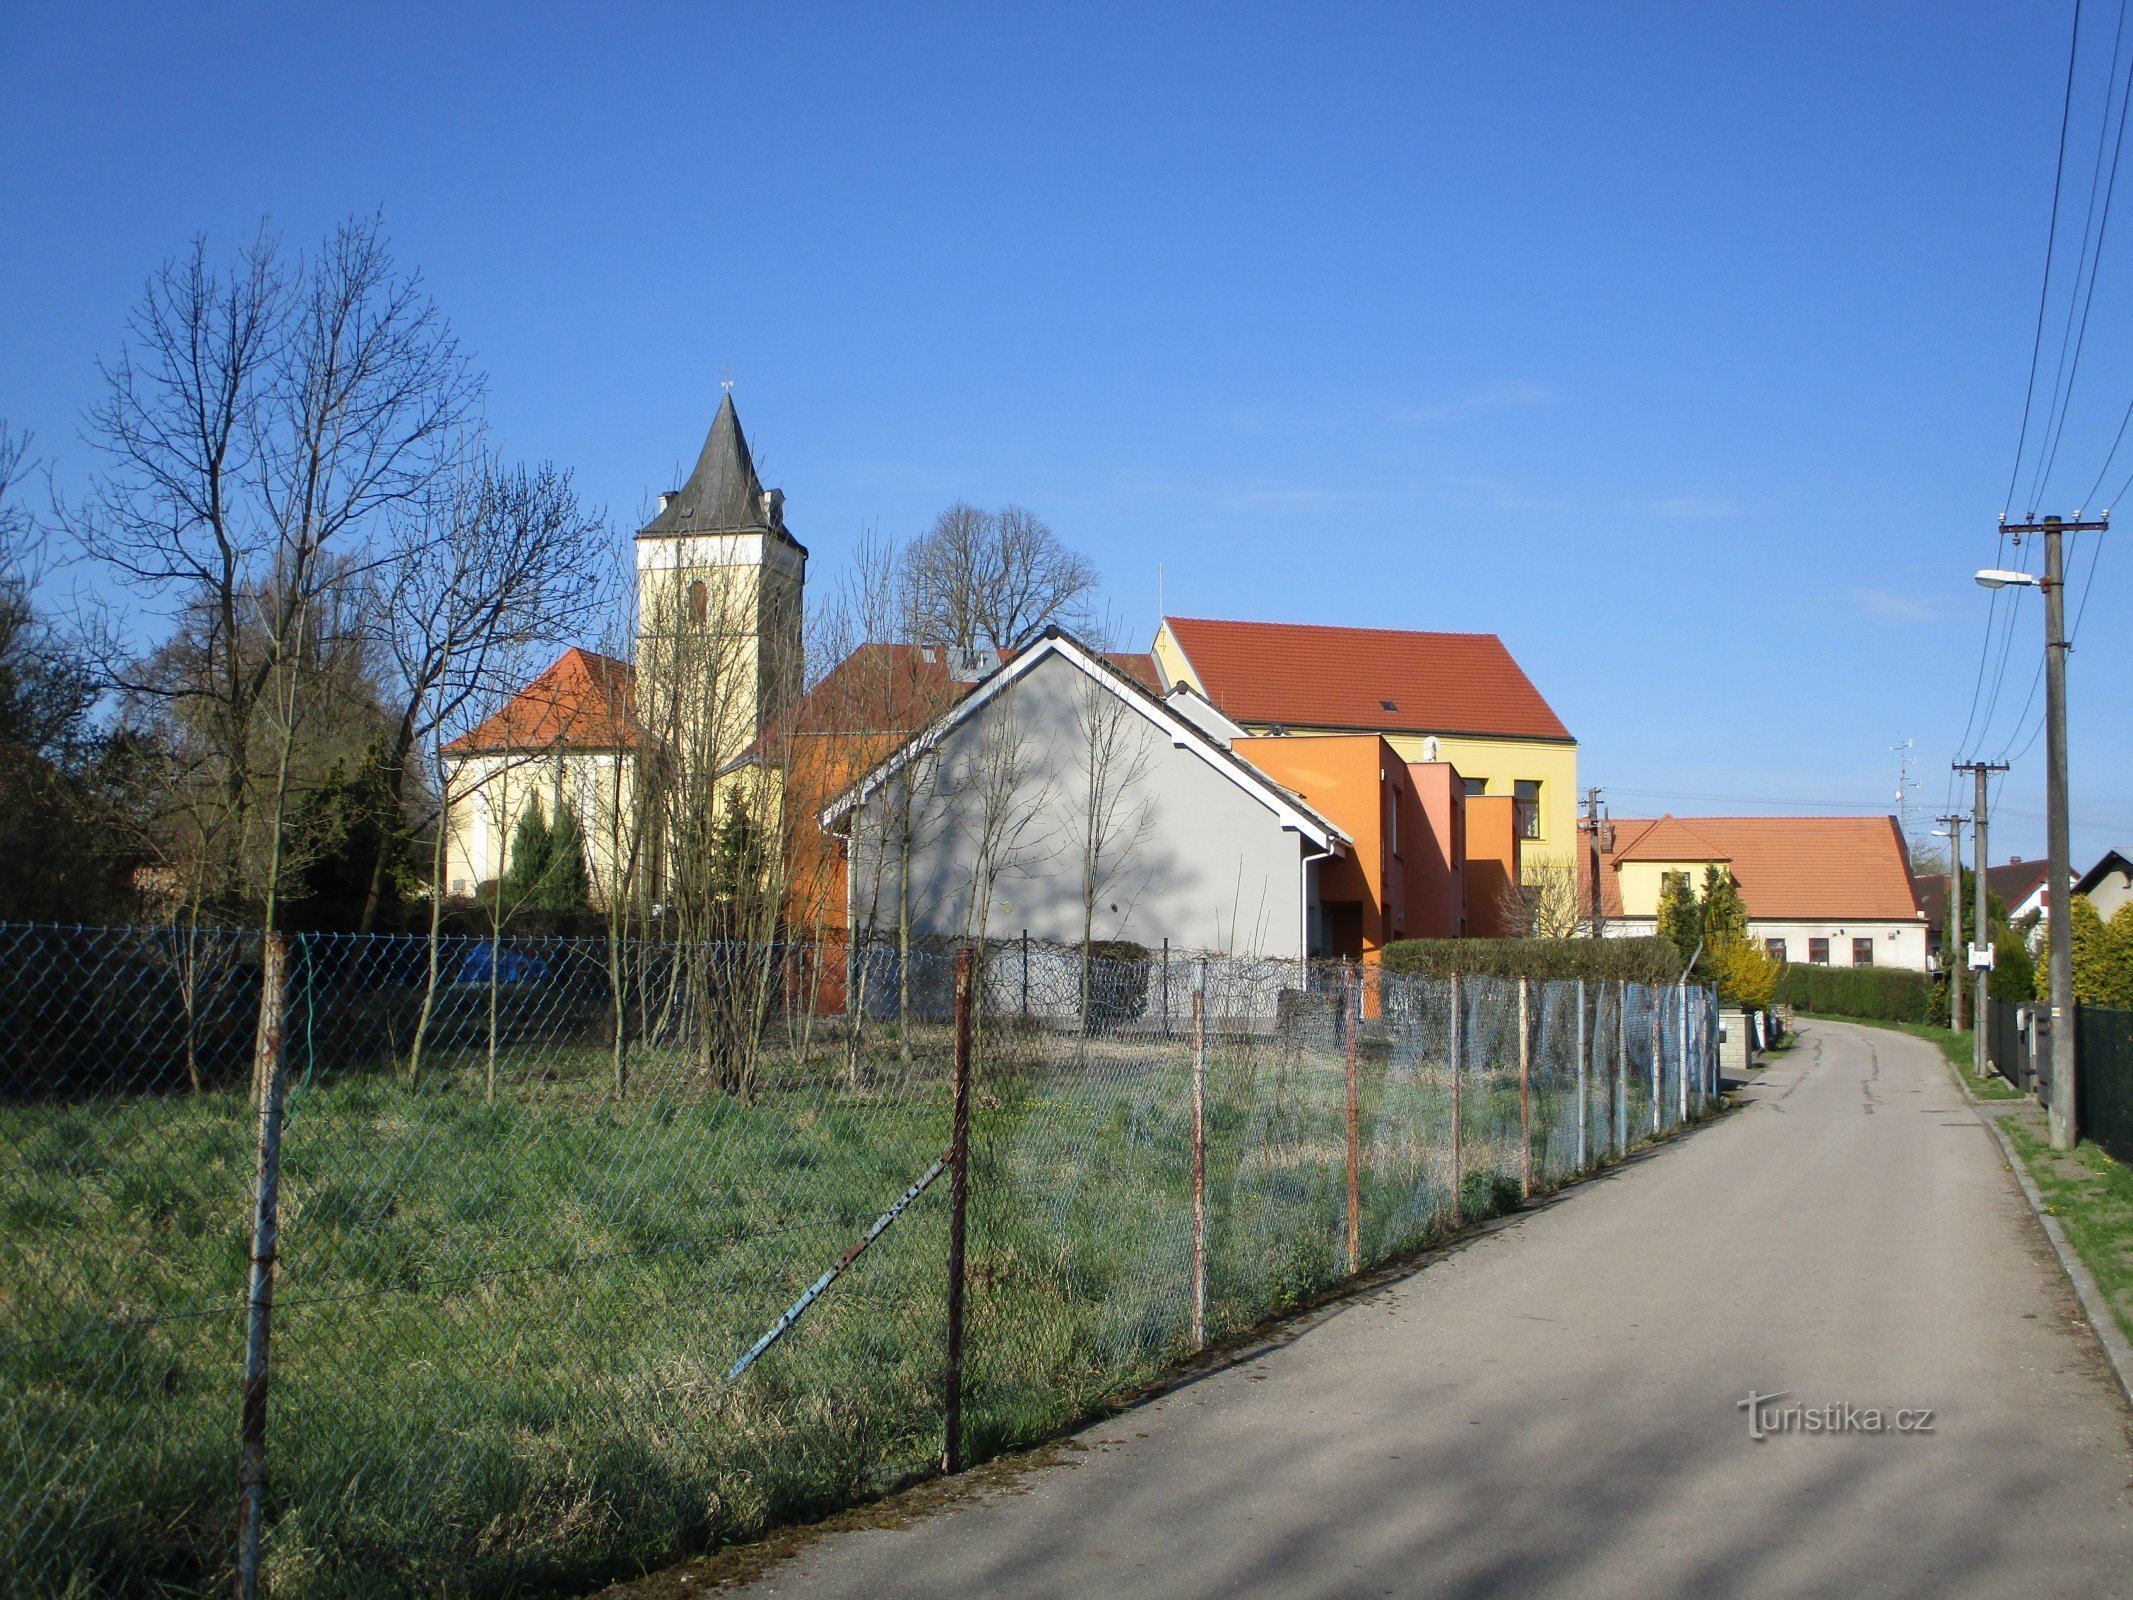 Pogled na cerkev in šolo (Lochenice)